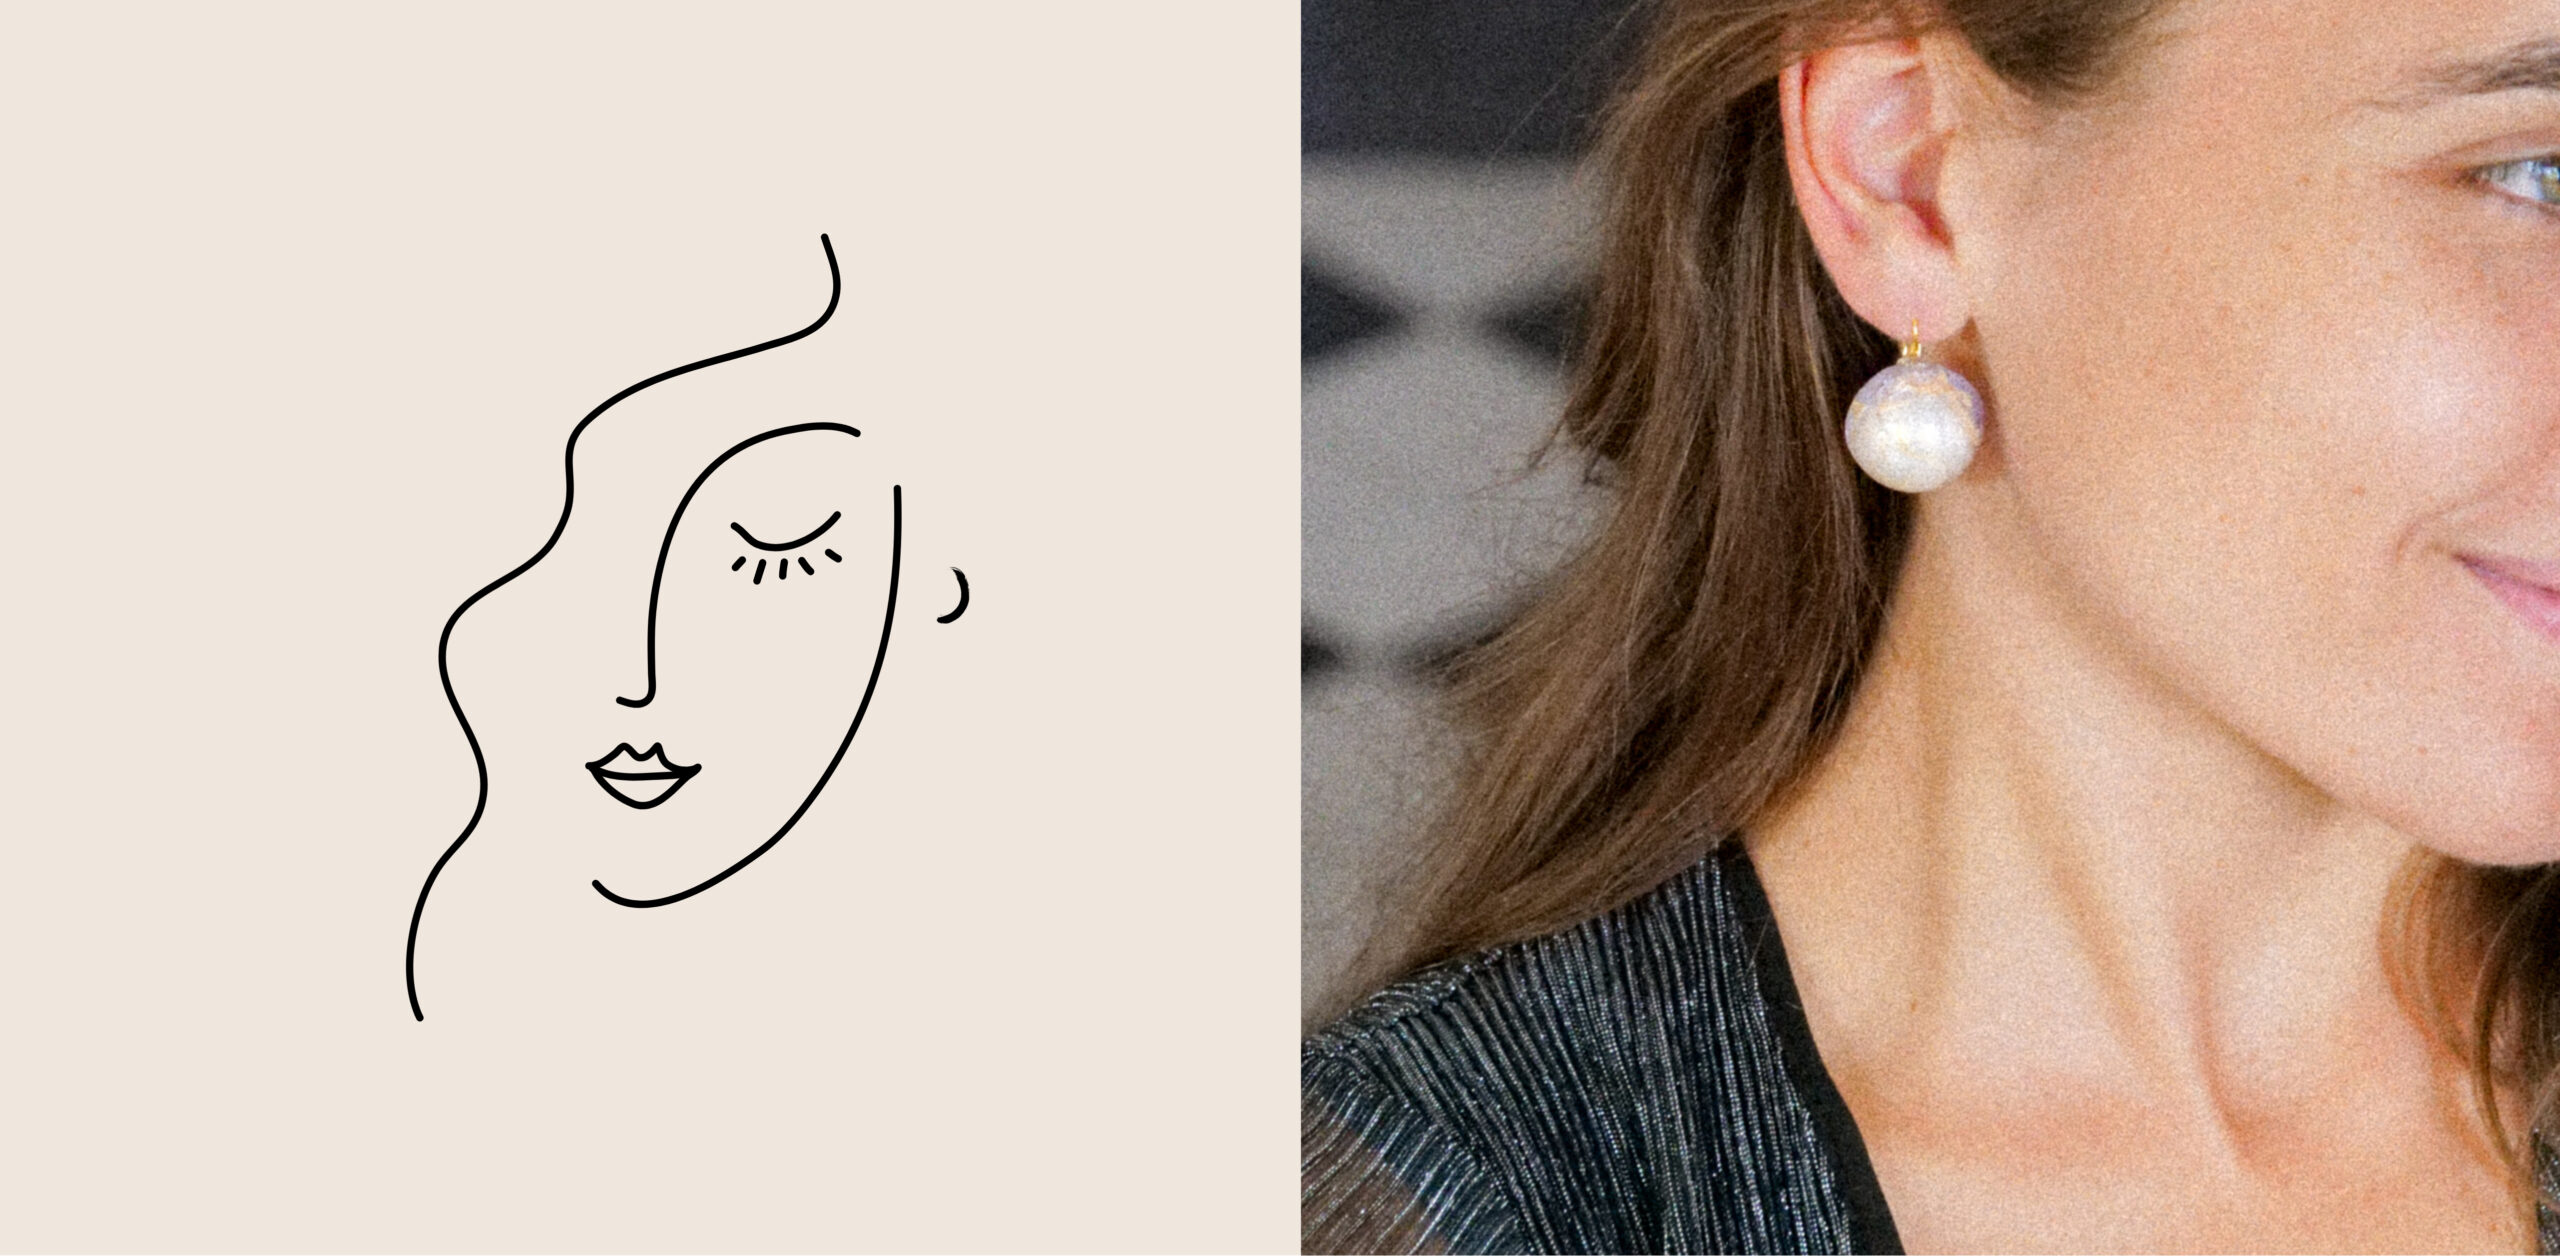 Maxi boucles d'oreilles Géranium pendantes  Des boucles d'oreilles  originales par Ciléa Paris - Ciléa